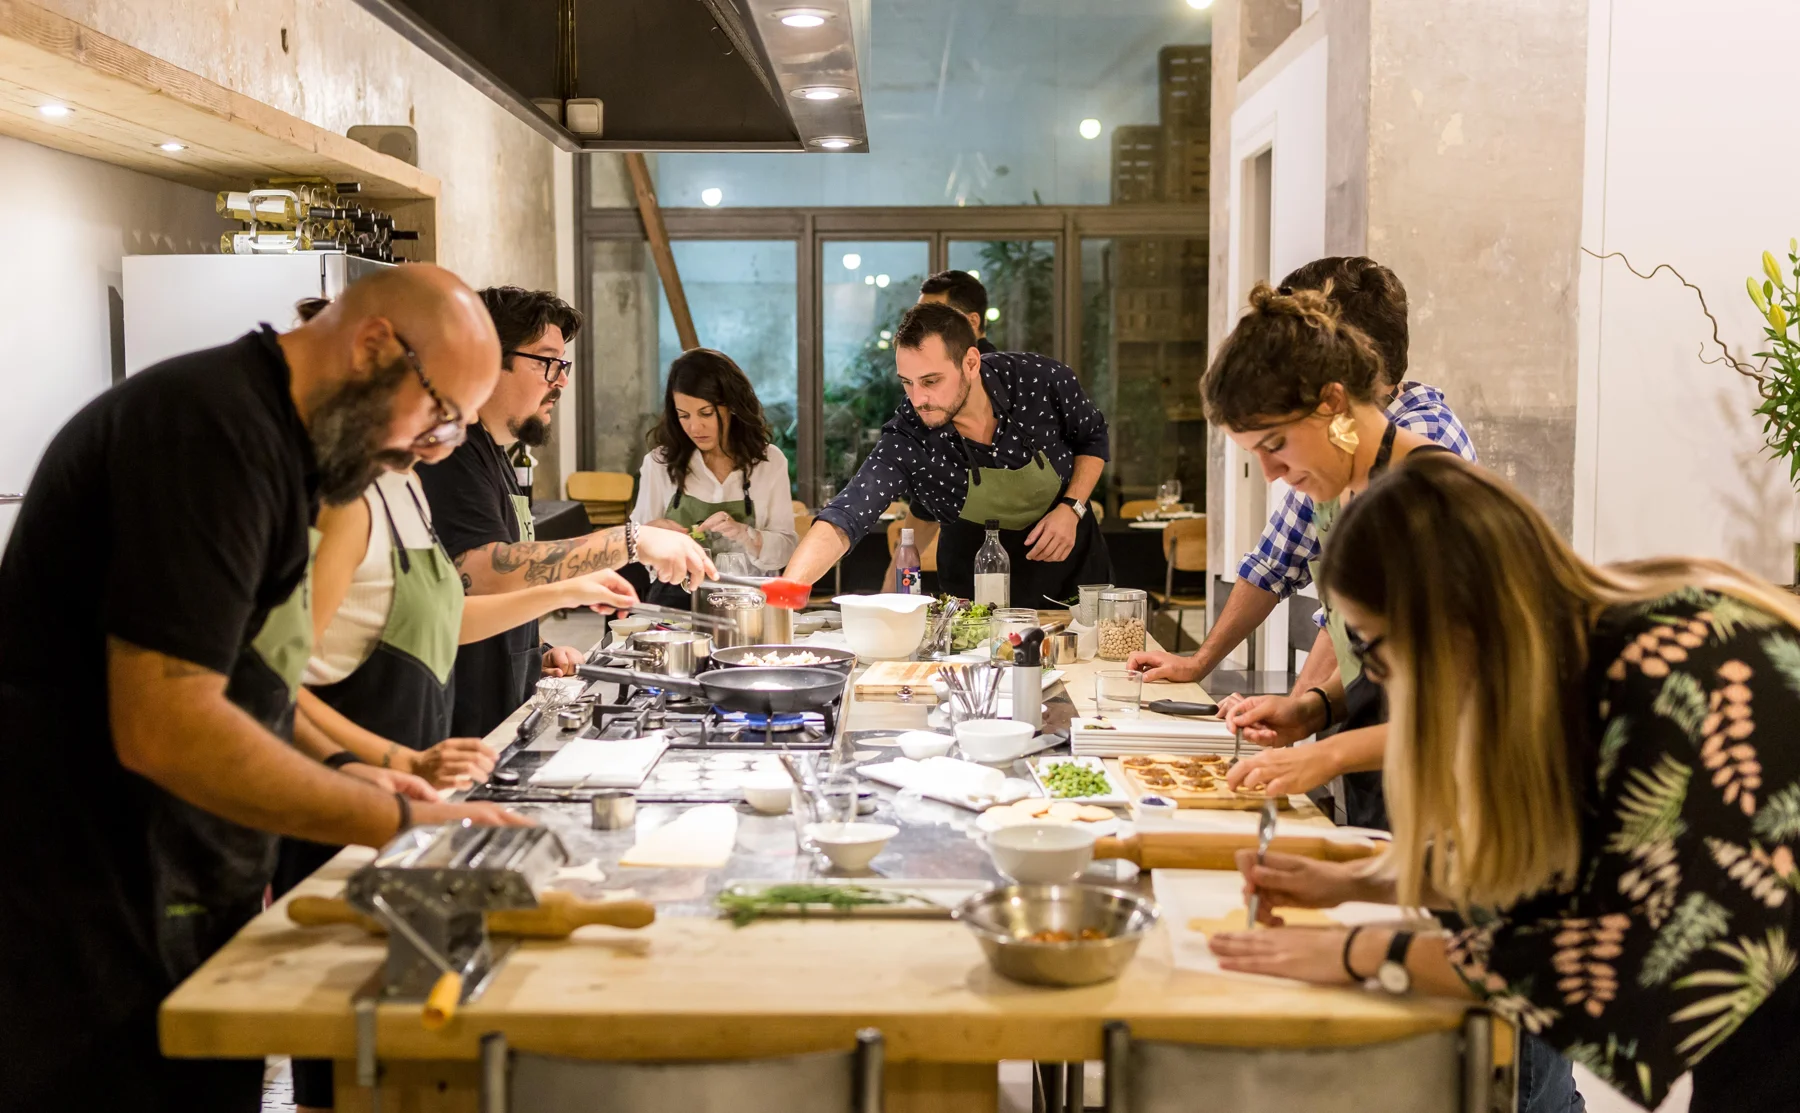 Taller de cocina participativo y cena en una preciosa fábrica reconvertida - 1316119